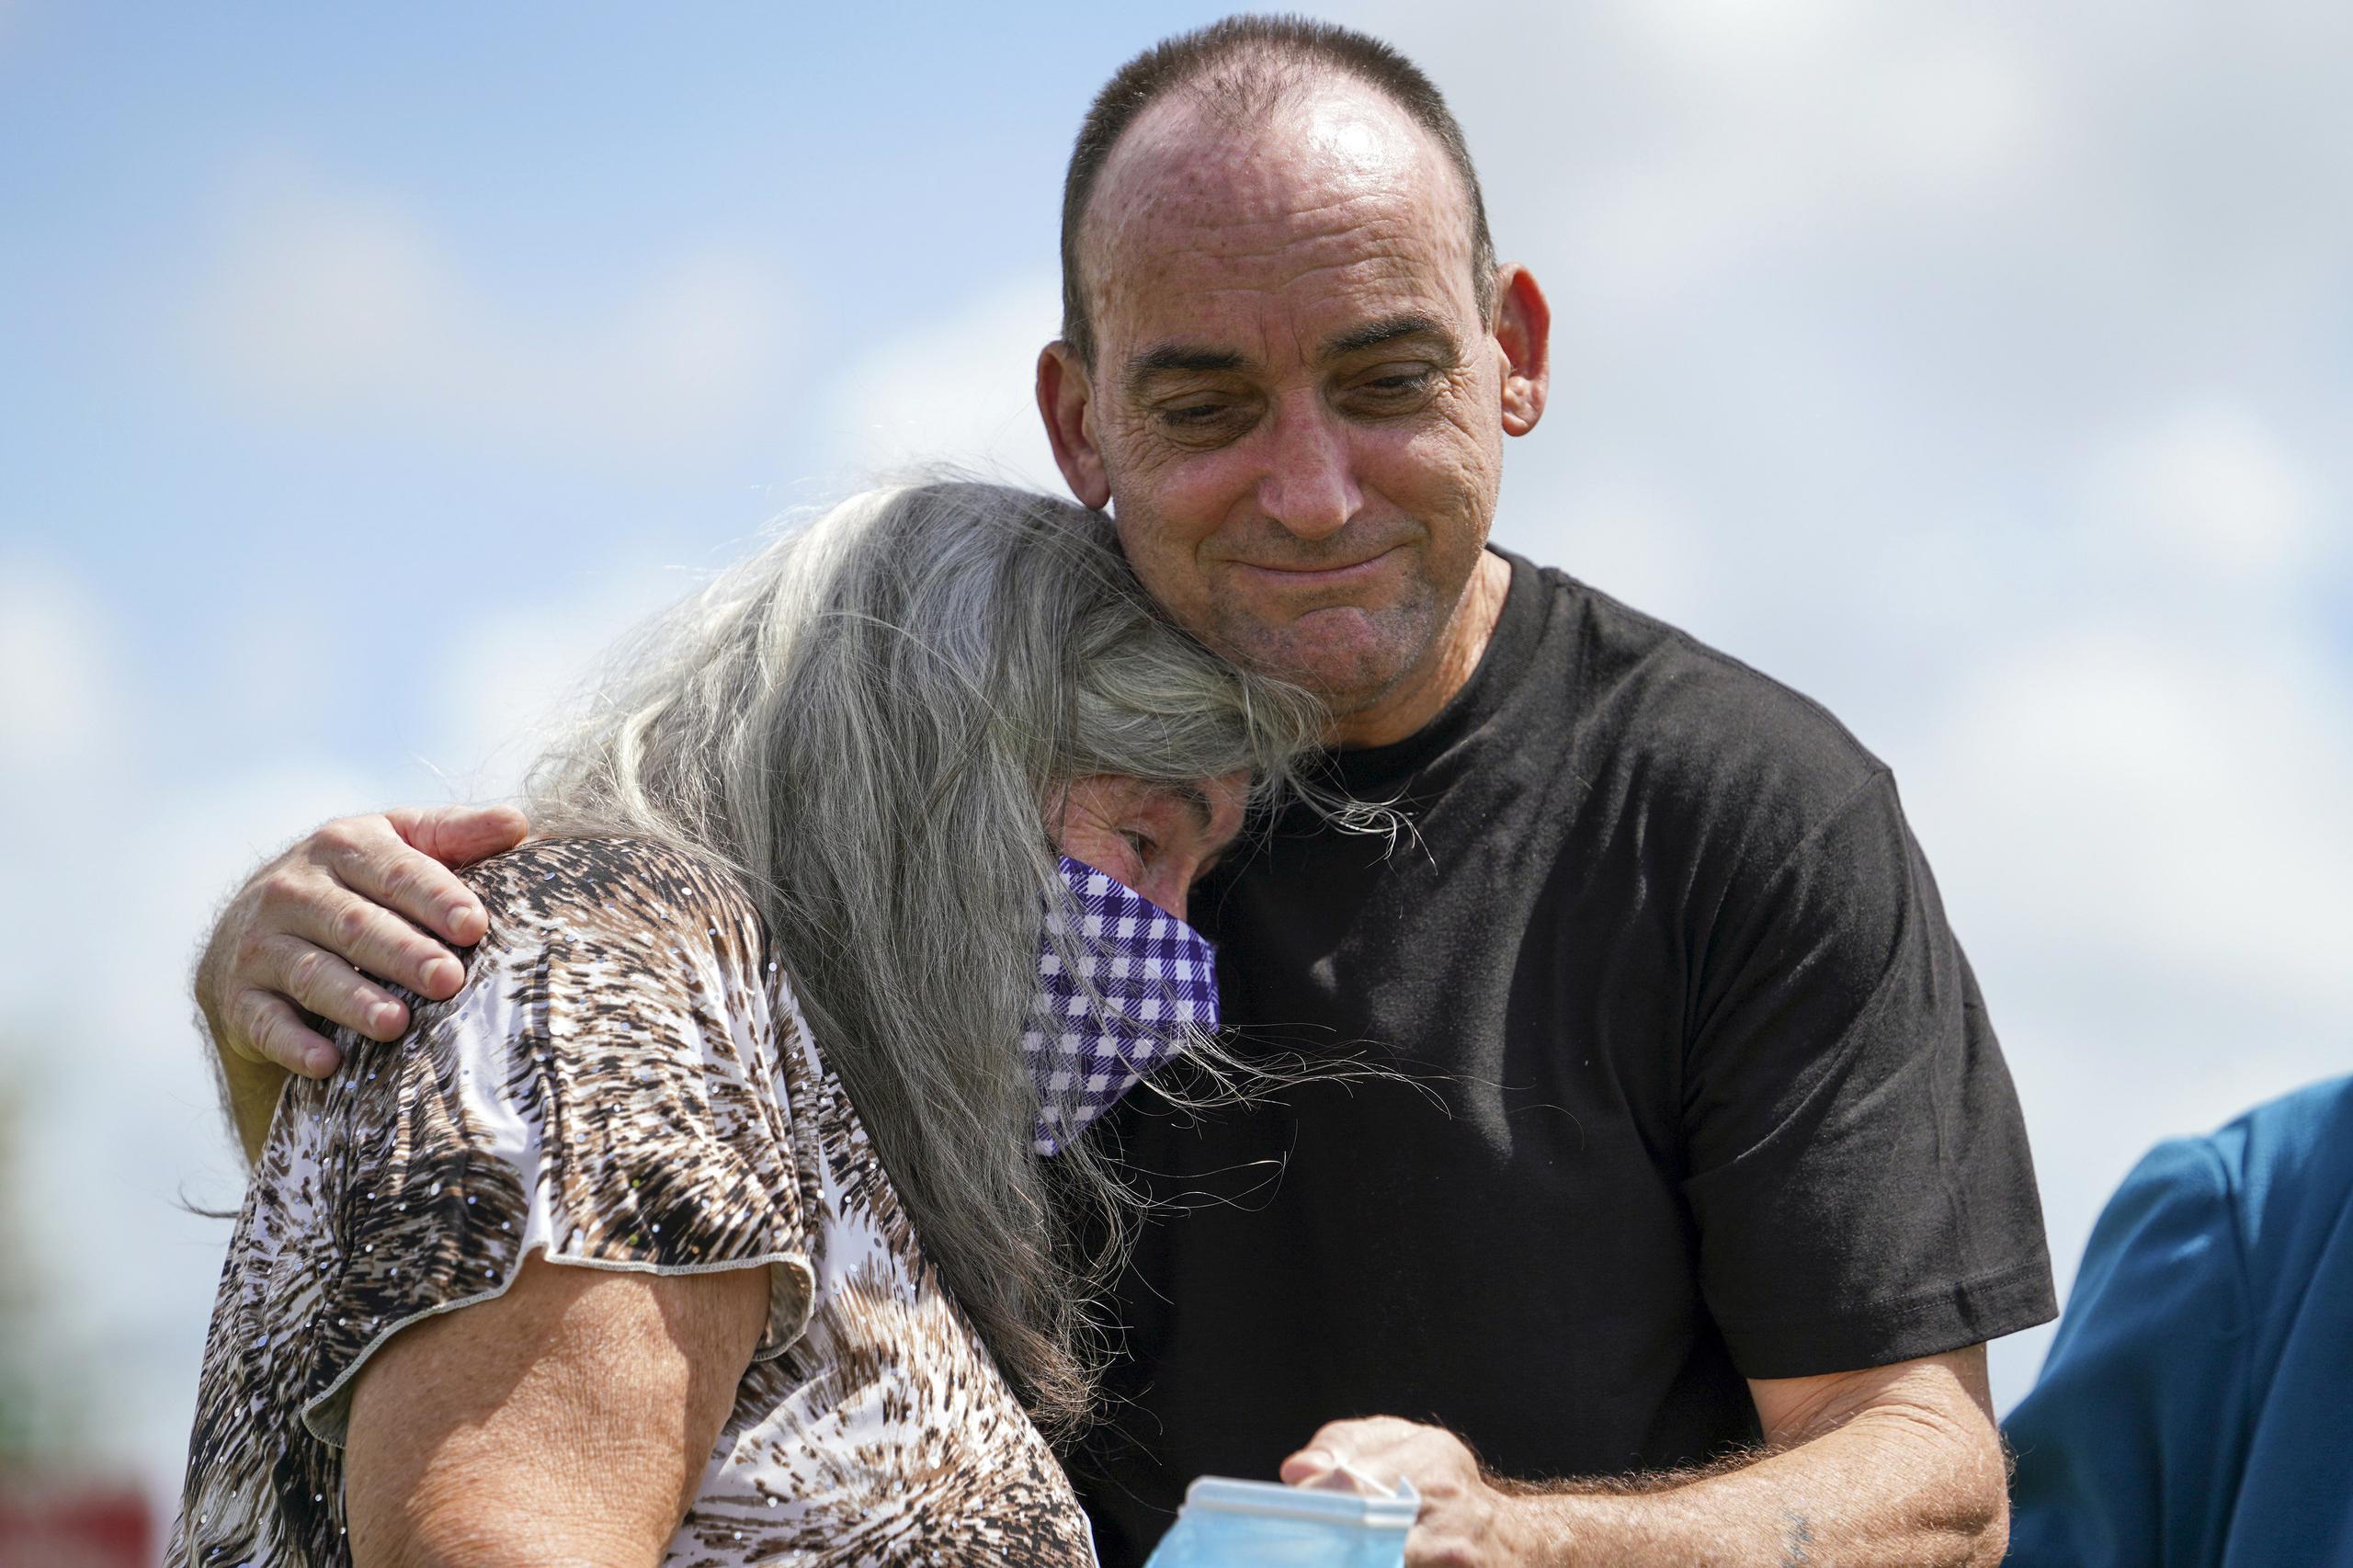 Robert Duboise abraza a su madre luego de salir de prisión en Bowling Green, Florida